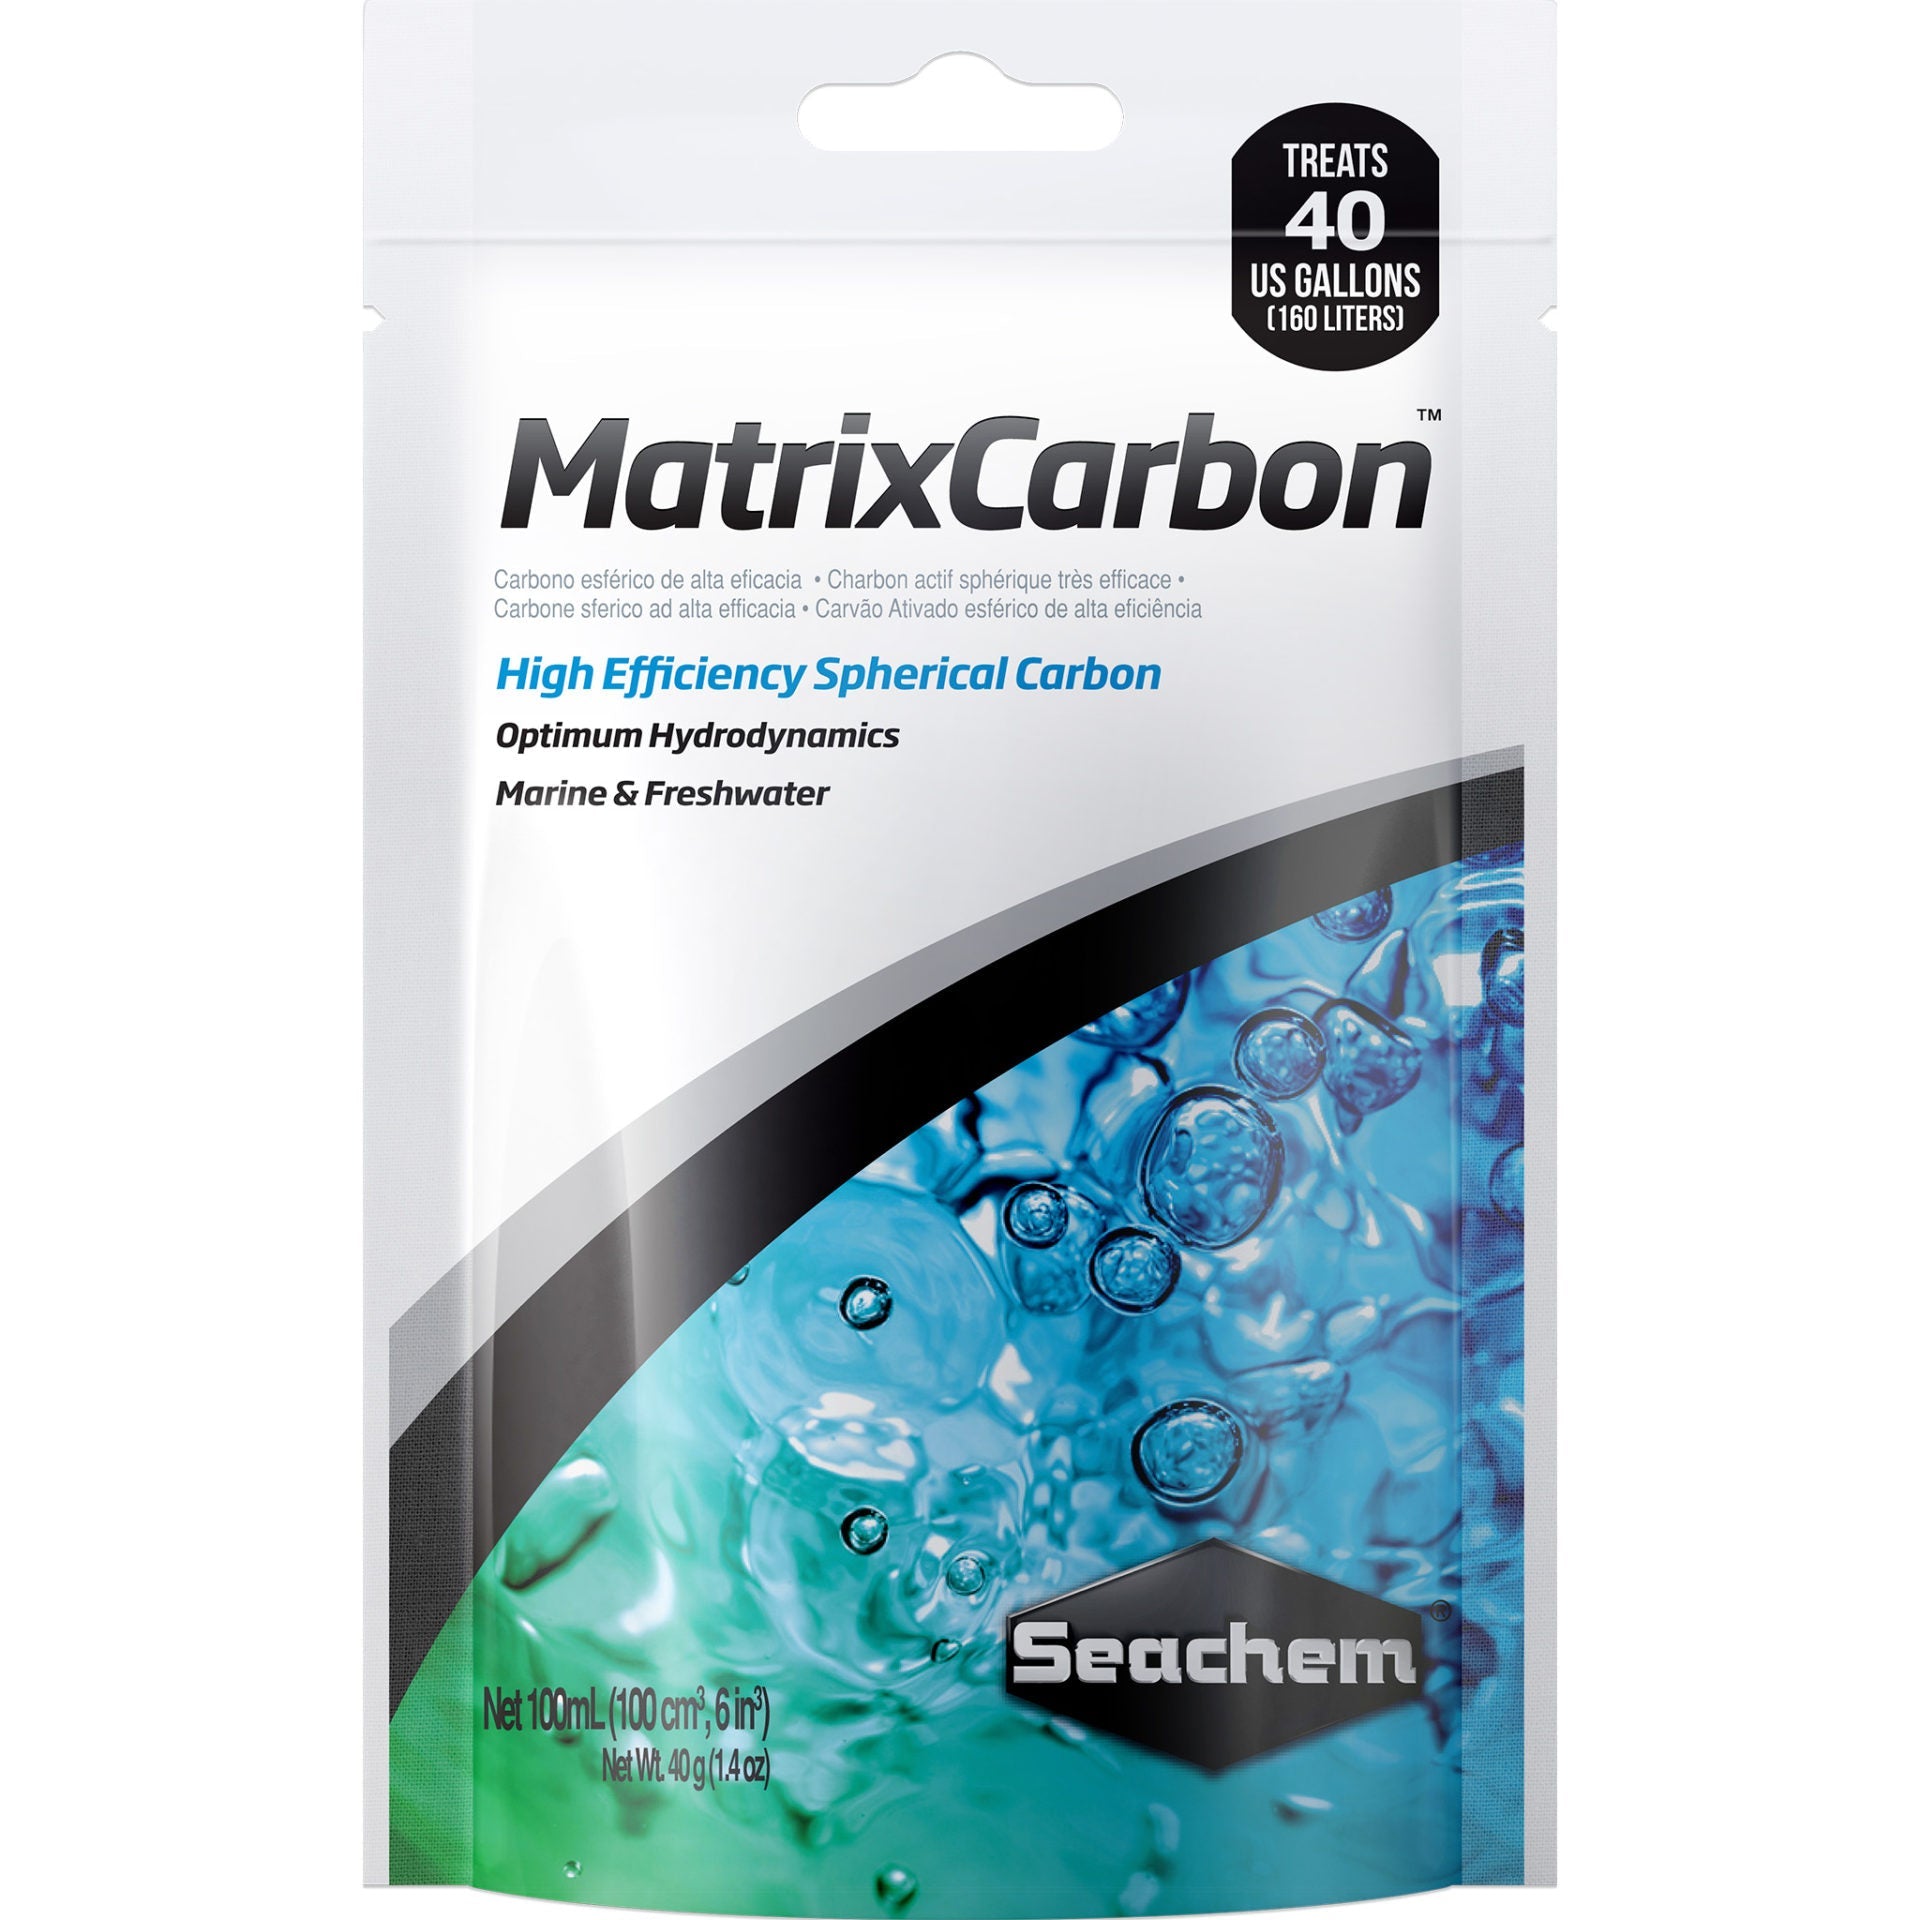 Matrix Carbon - Seachem - Seachem